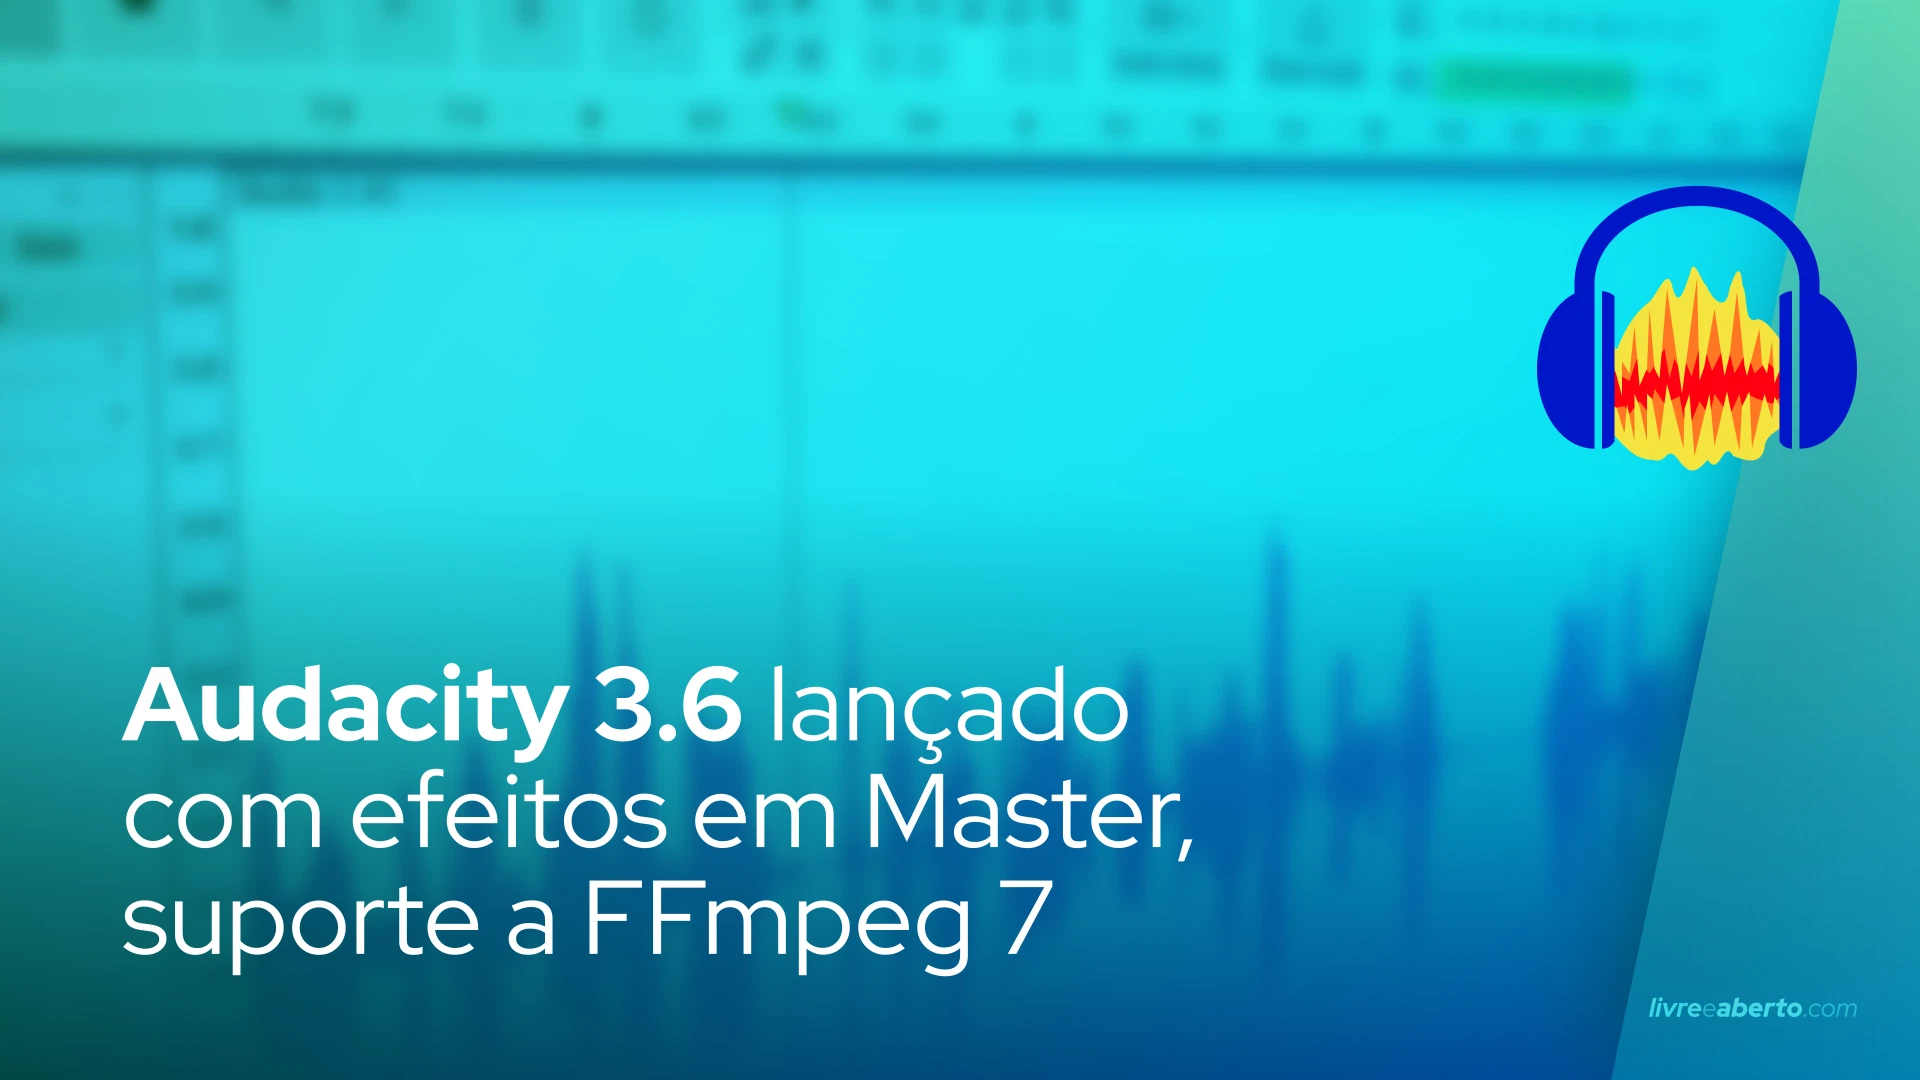 Audacity 3.6 lançado com efeitos em Master, suporte a FFmpeg 7